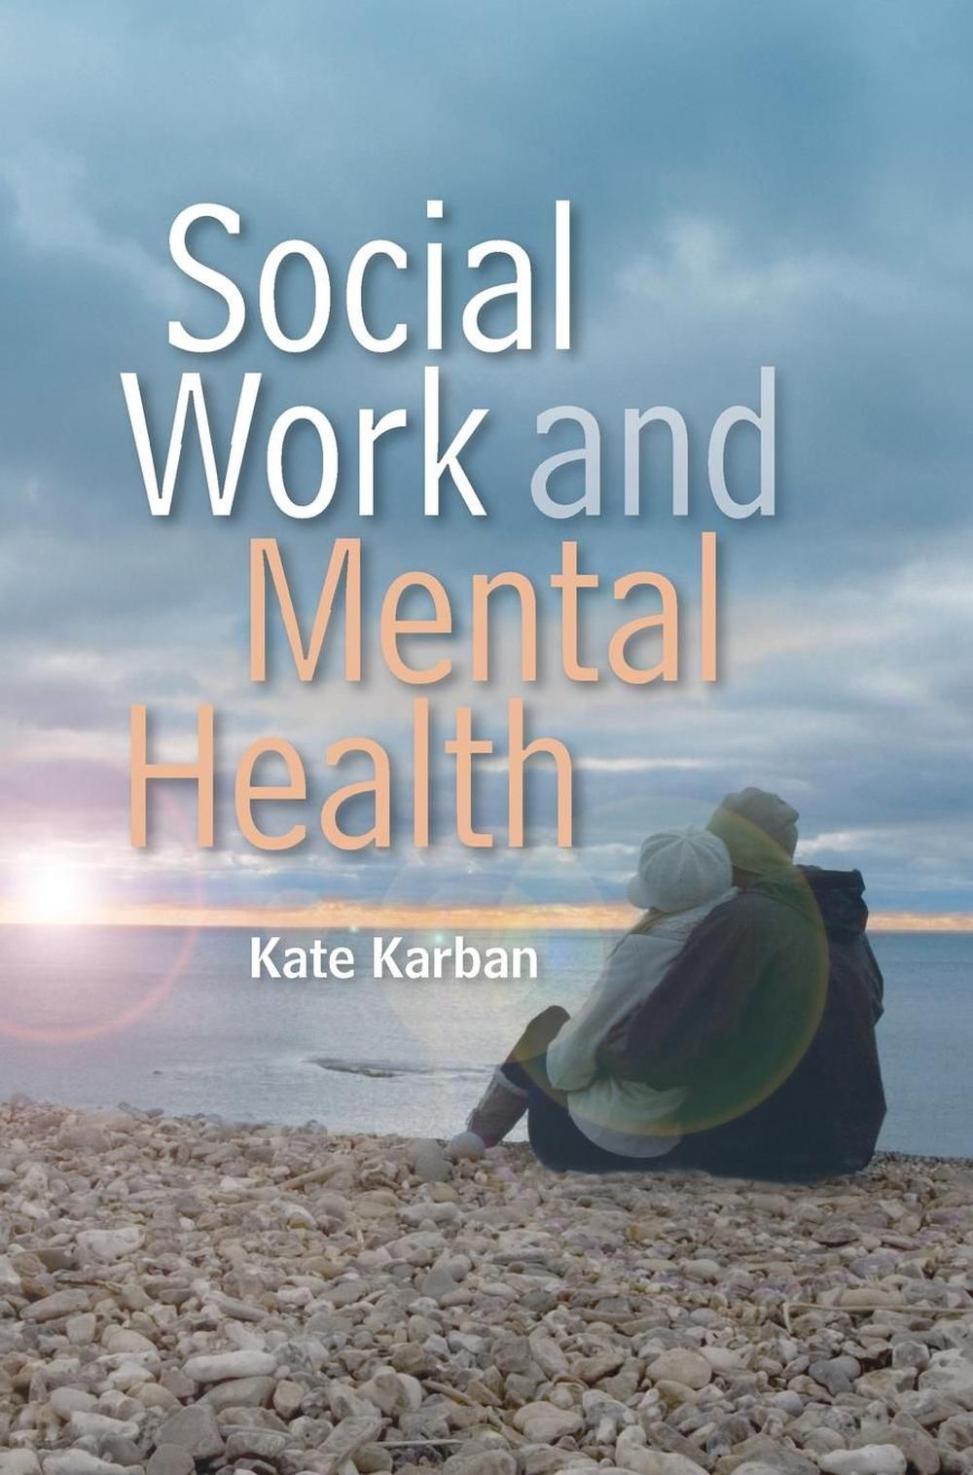 Jak pracownicy socjalni mogą wykorzystywać recenzje książek do wspierania zmian społecznych i podnoszenia świadomości na temat ważnych problemów?